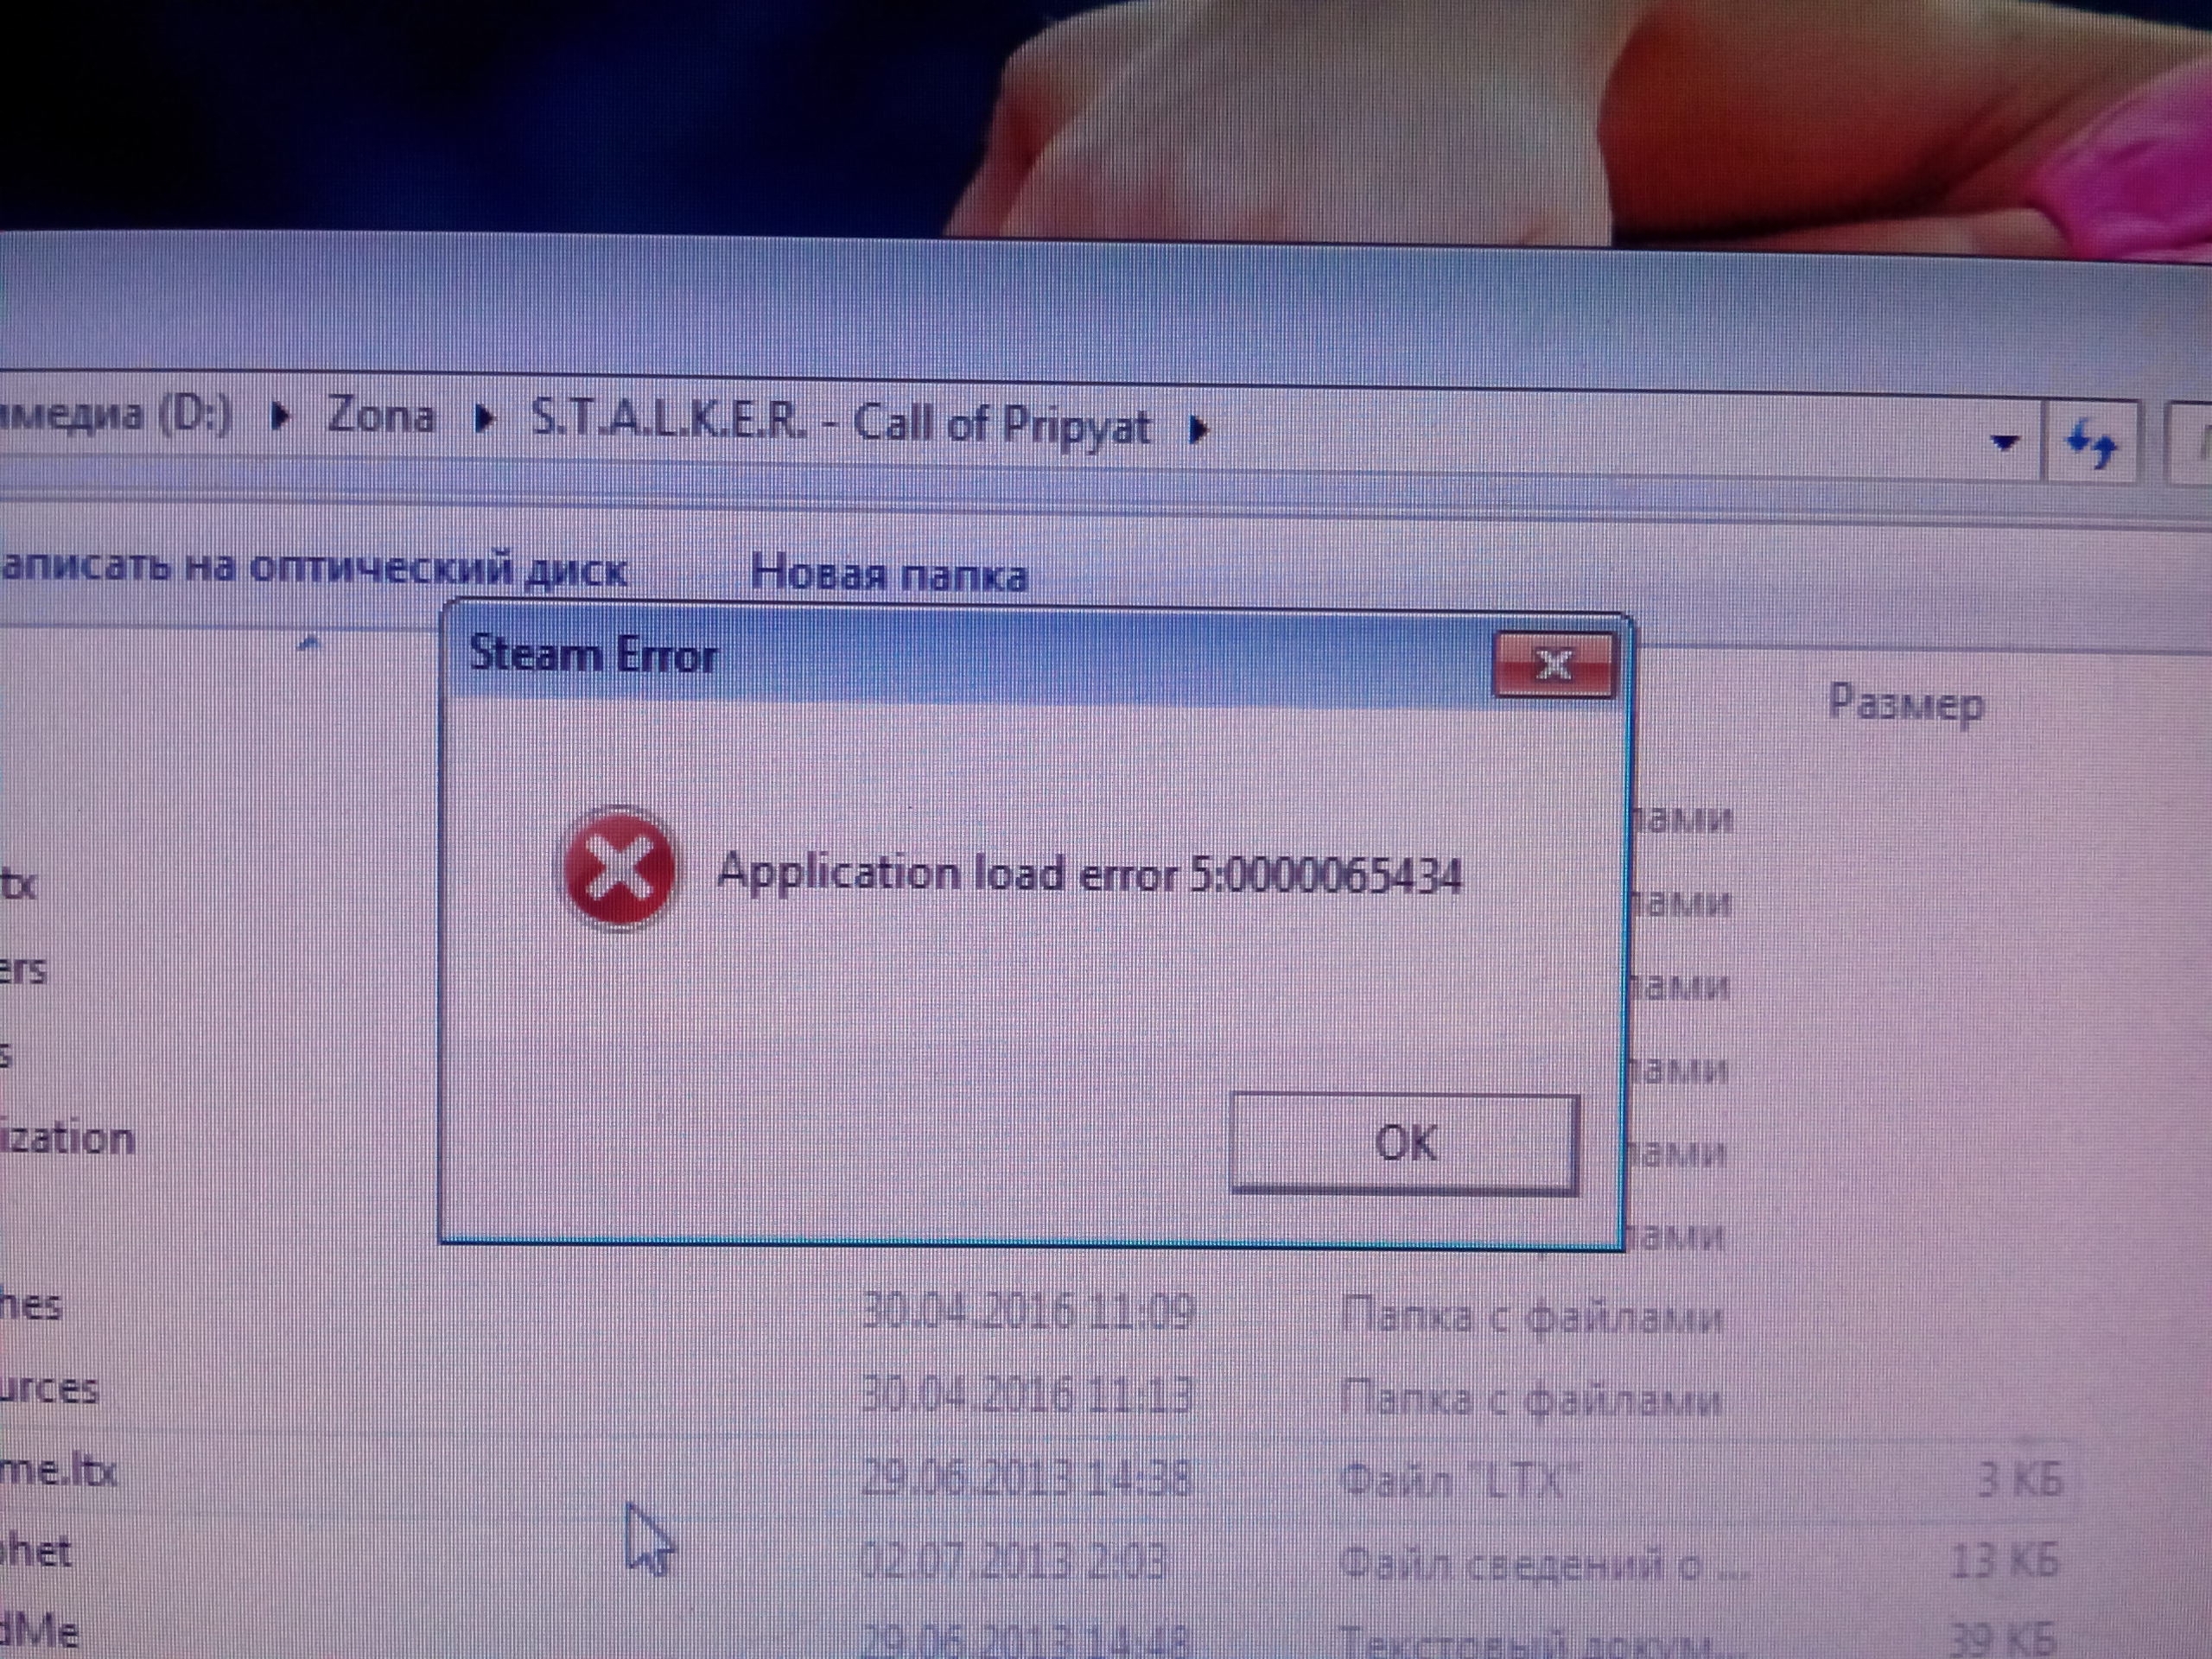 Ошибка application load error p:0000065432 — что делать